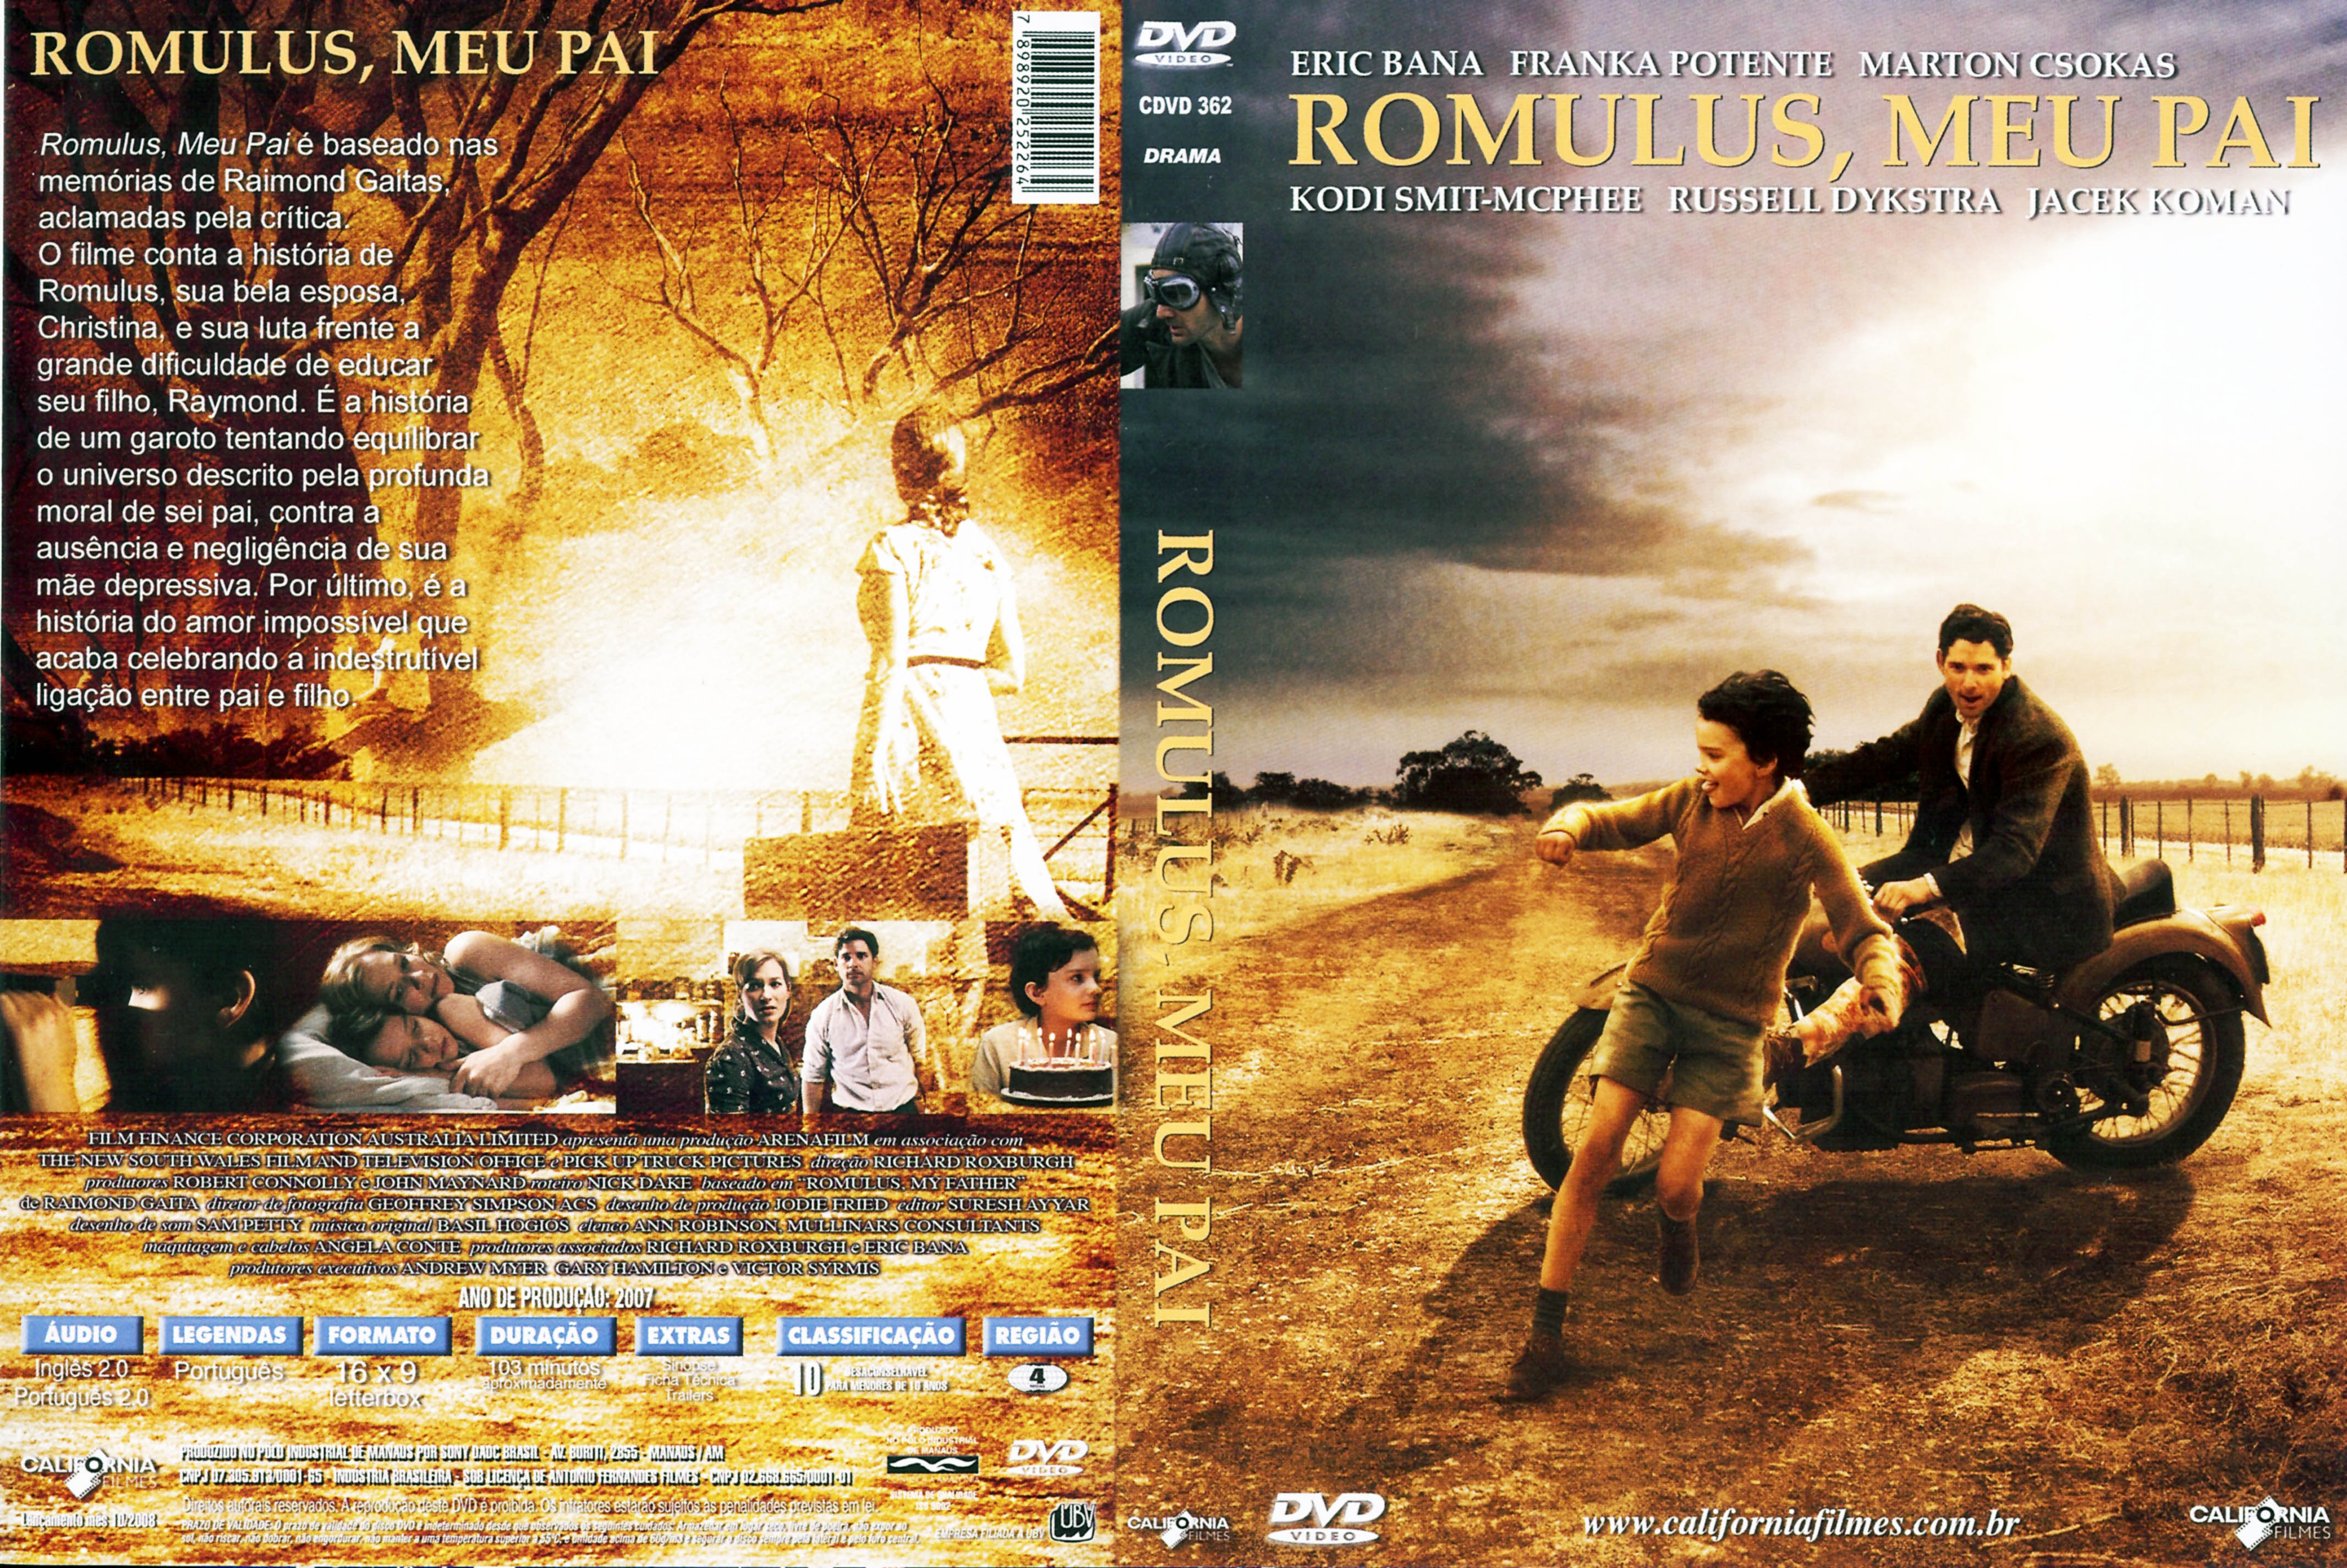 RomulusMeuPai